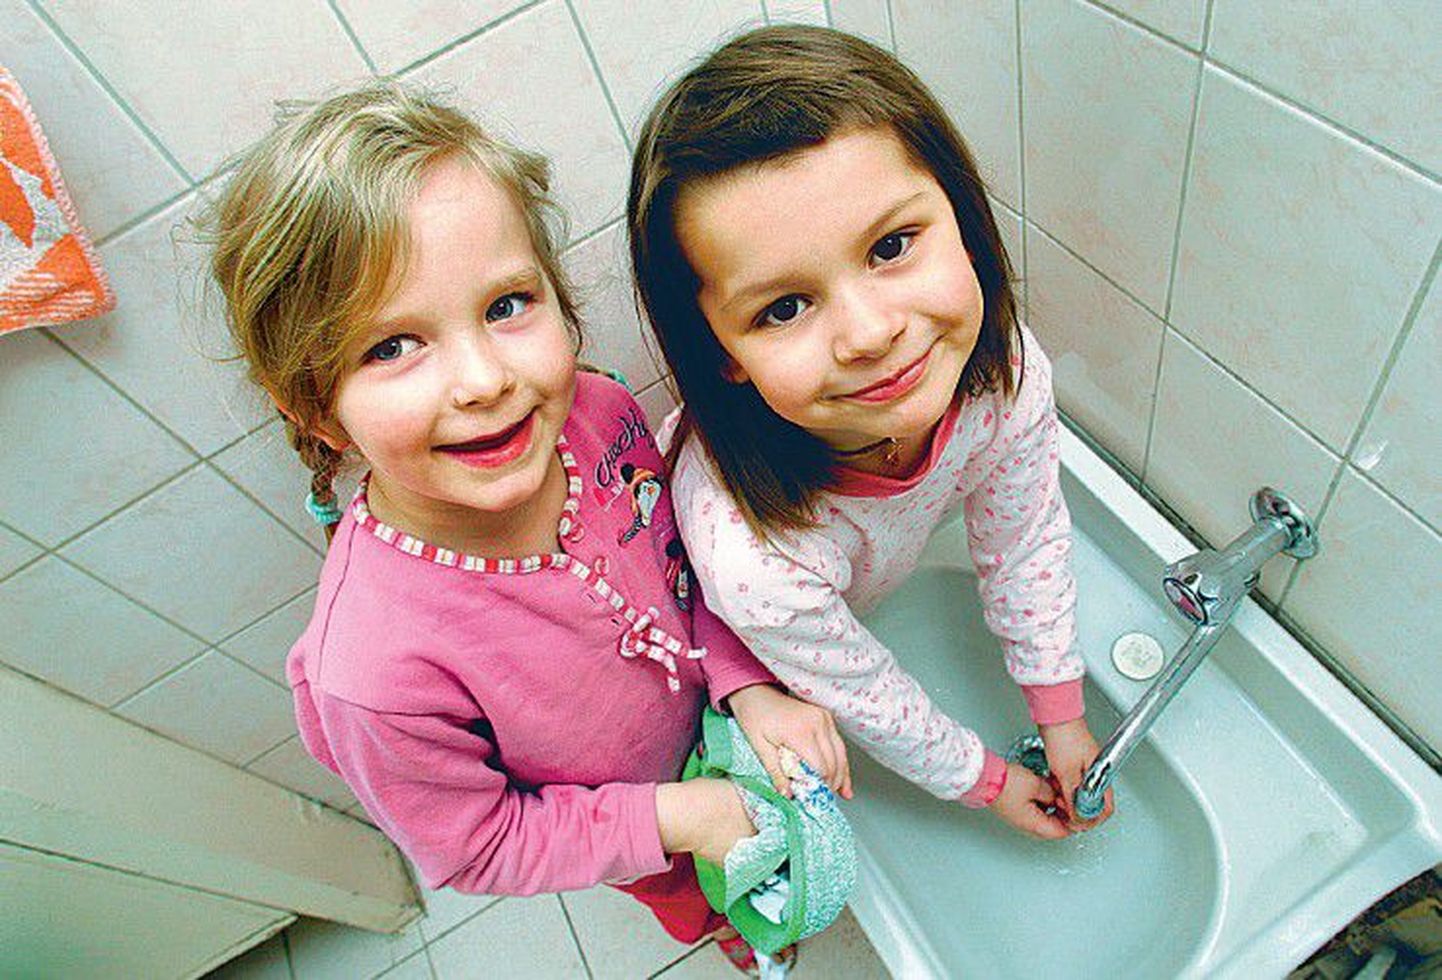 Antibiootikum viiruse vastu ei aita, hoolikast  kätepesust võib viirusnakkuste vältimisel aga palju kasu olla. Pildil pesevad käsi Tallinna Mesimummu lasteaia lapsed Aurelia ja Aglaia.